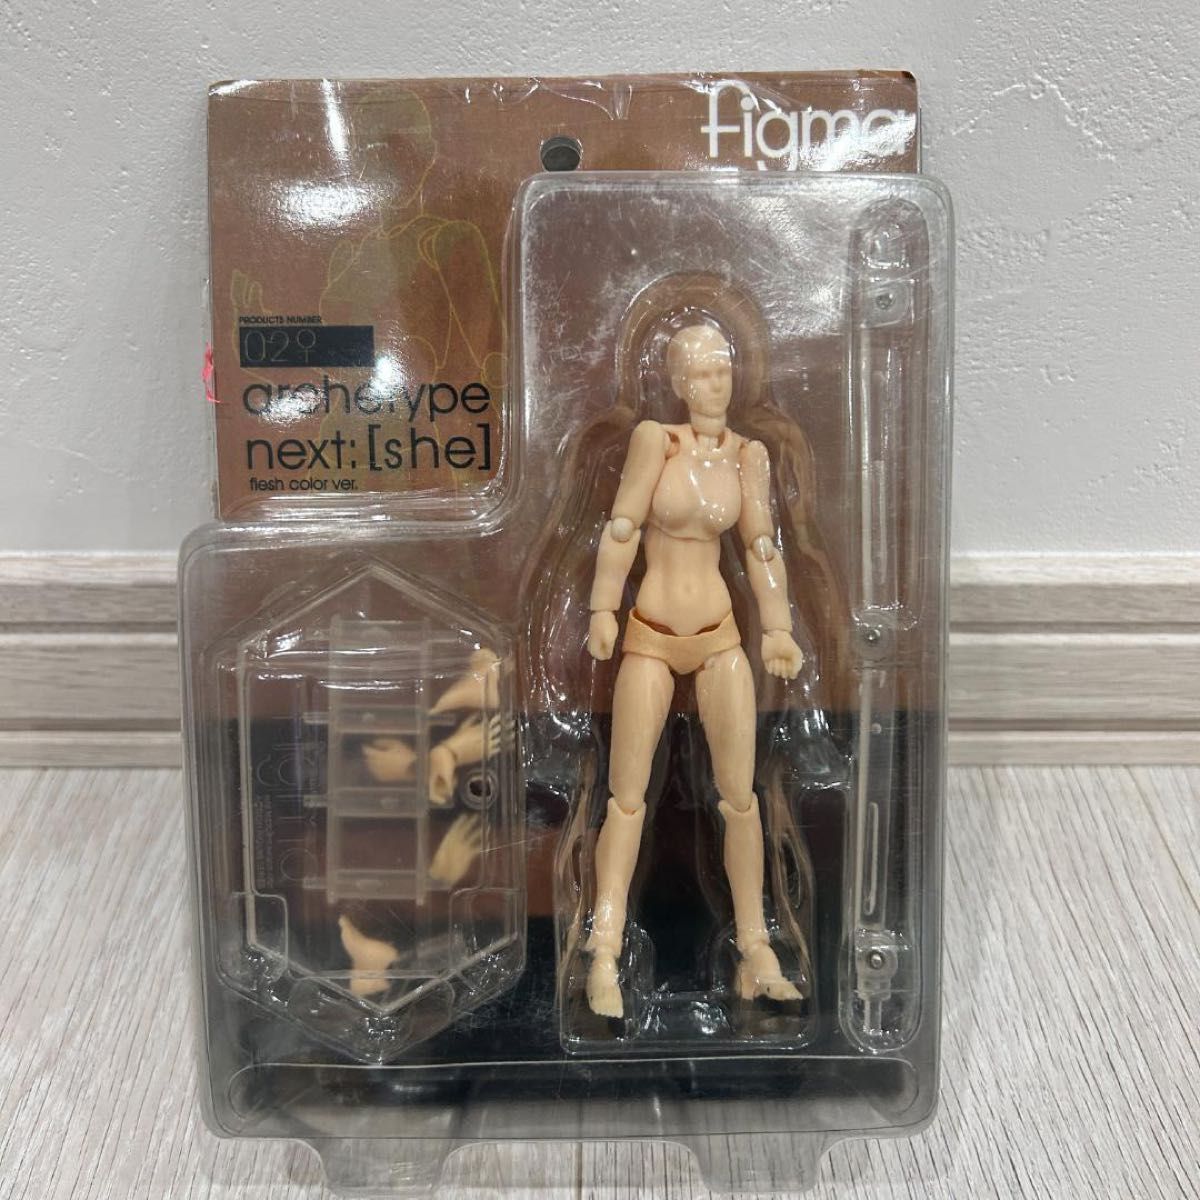 デッサン人形　女性　肌色  デラックスセット デッサンモデル 人体模型 画材